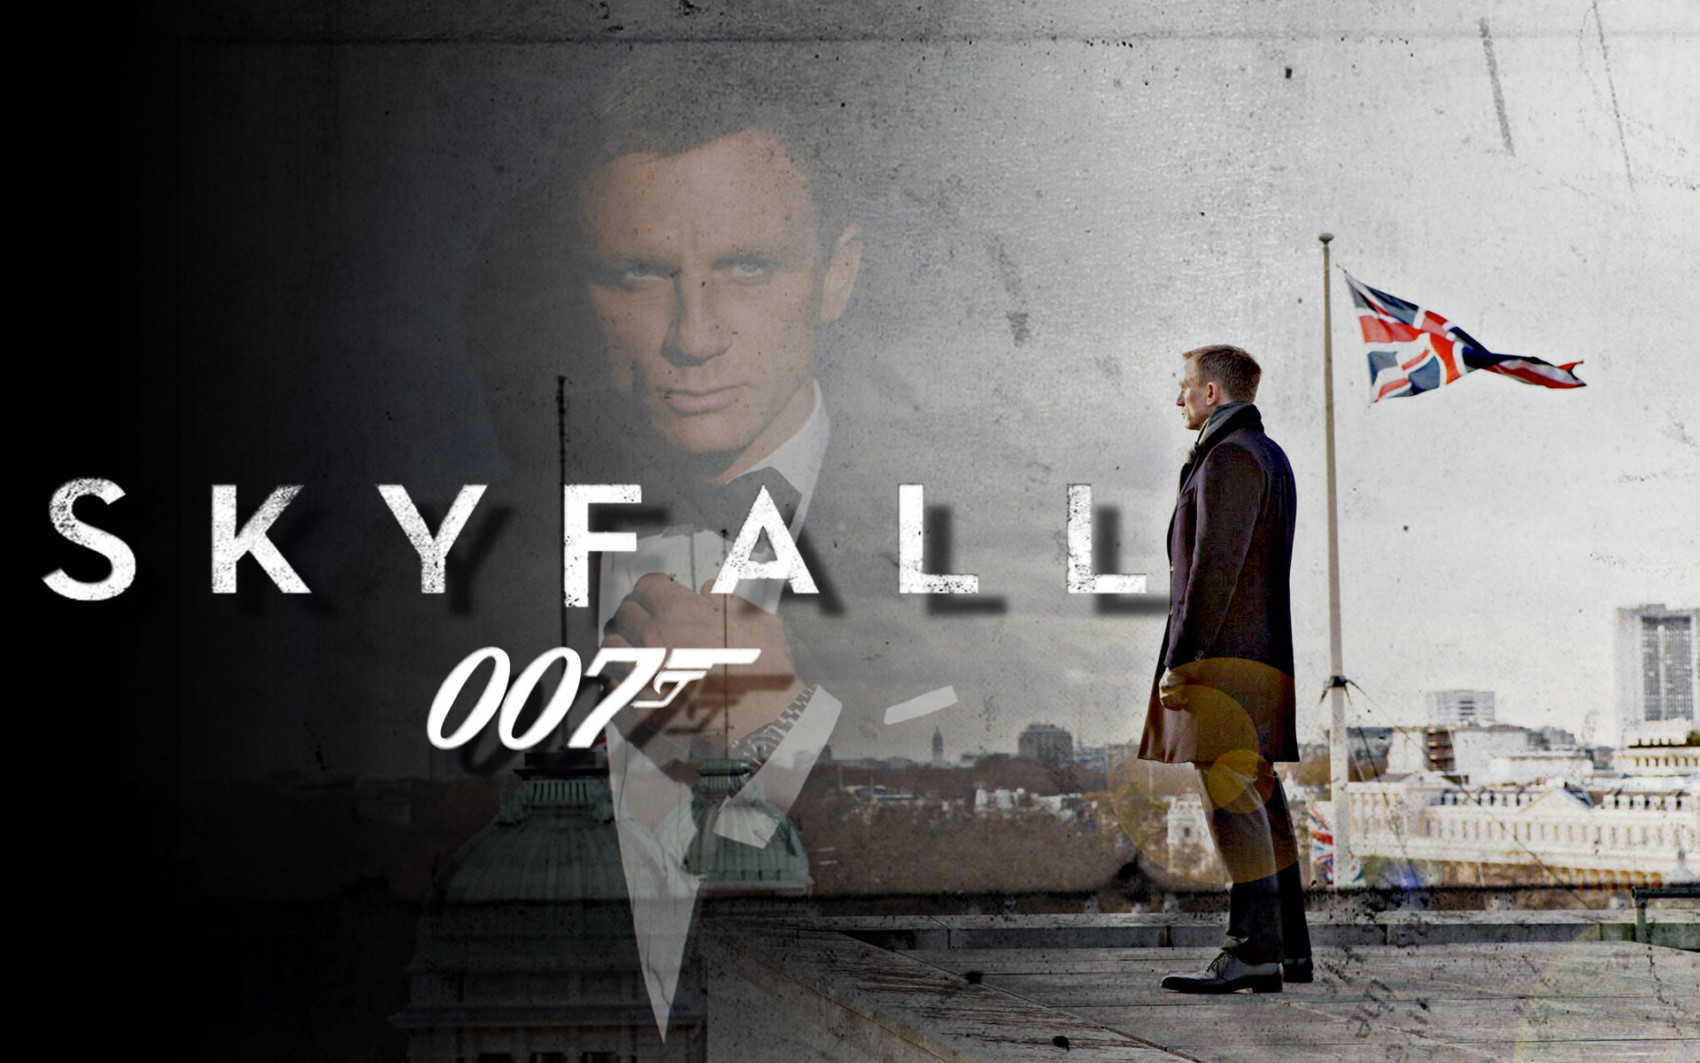 007 skyfall poster